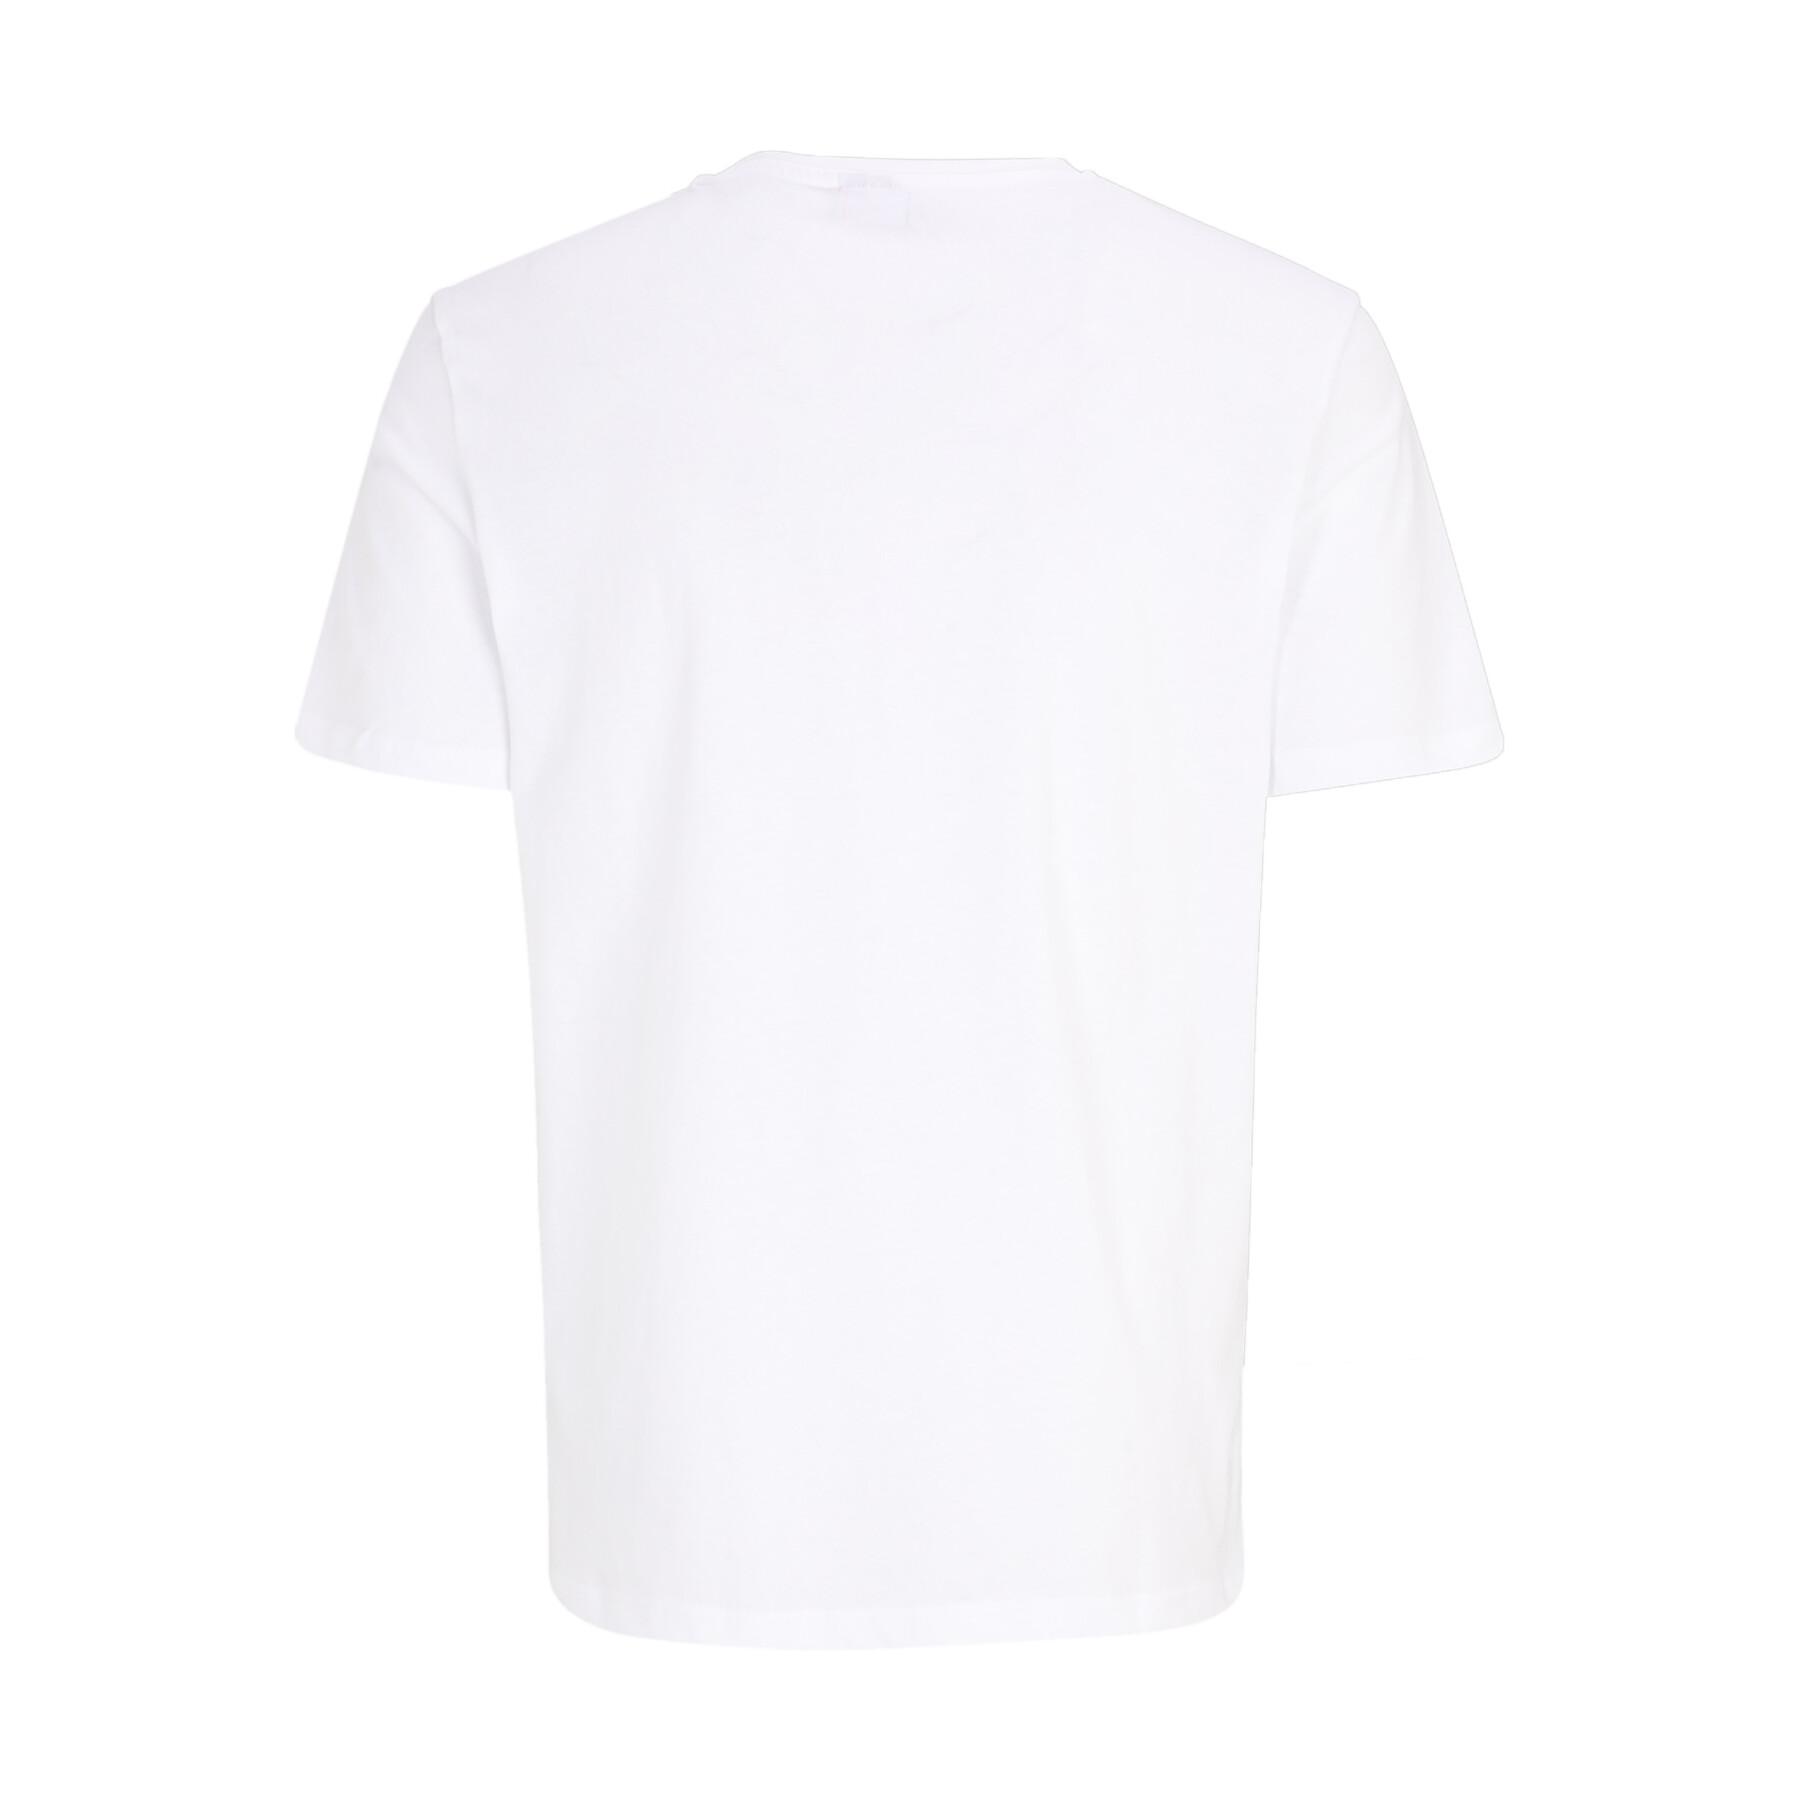 T-shirts Fila Brod (x2)